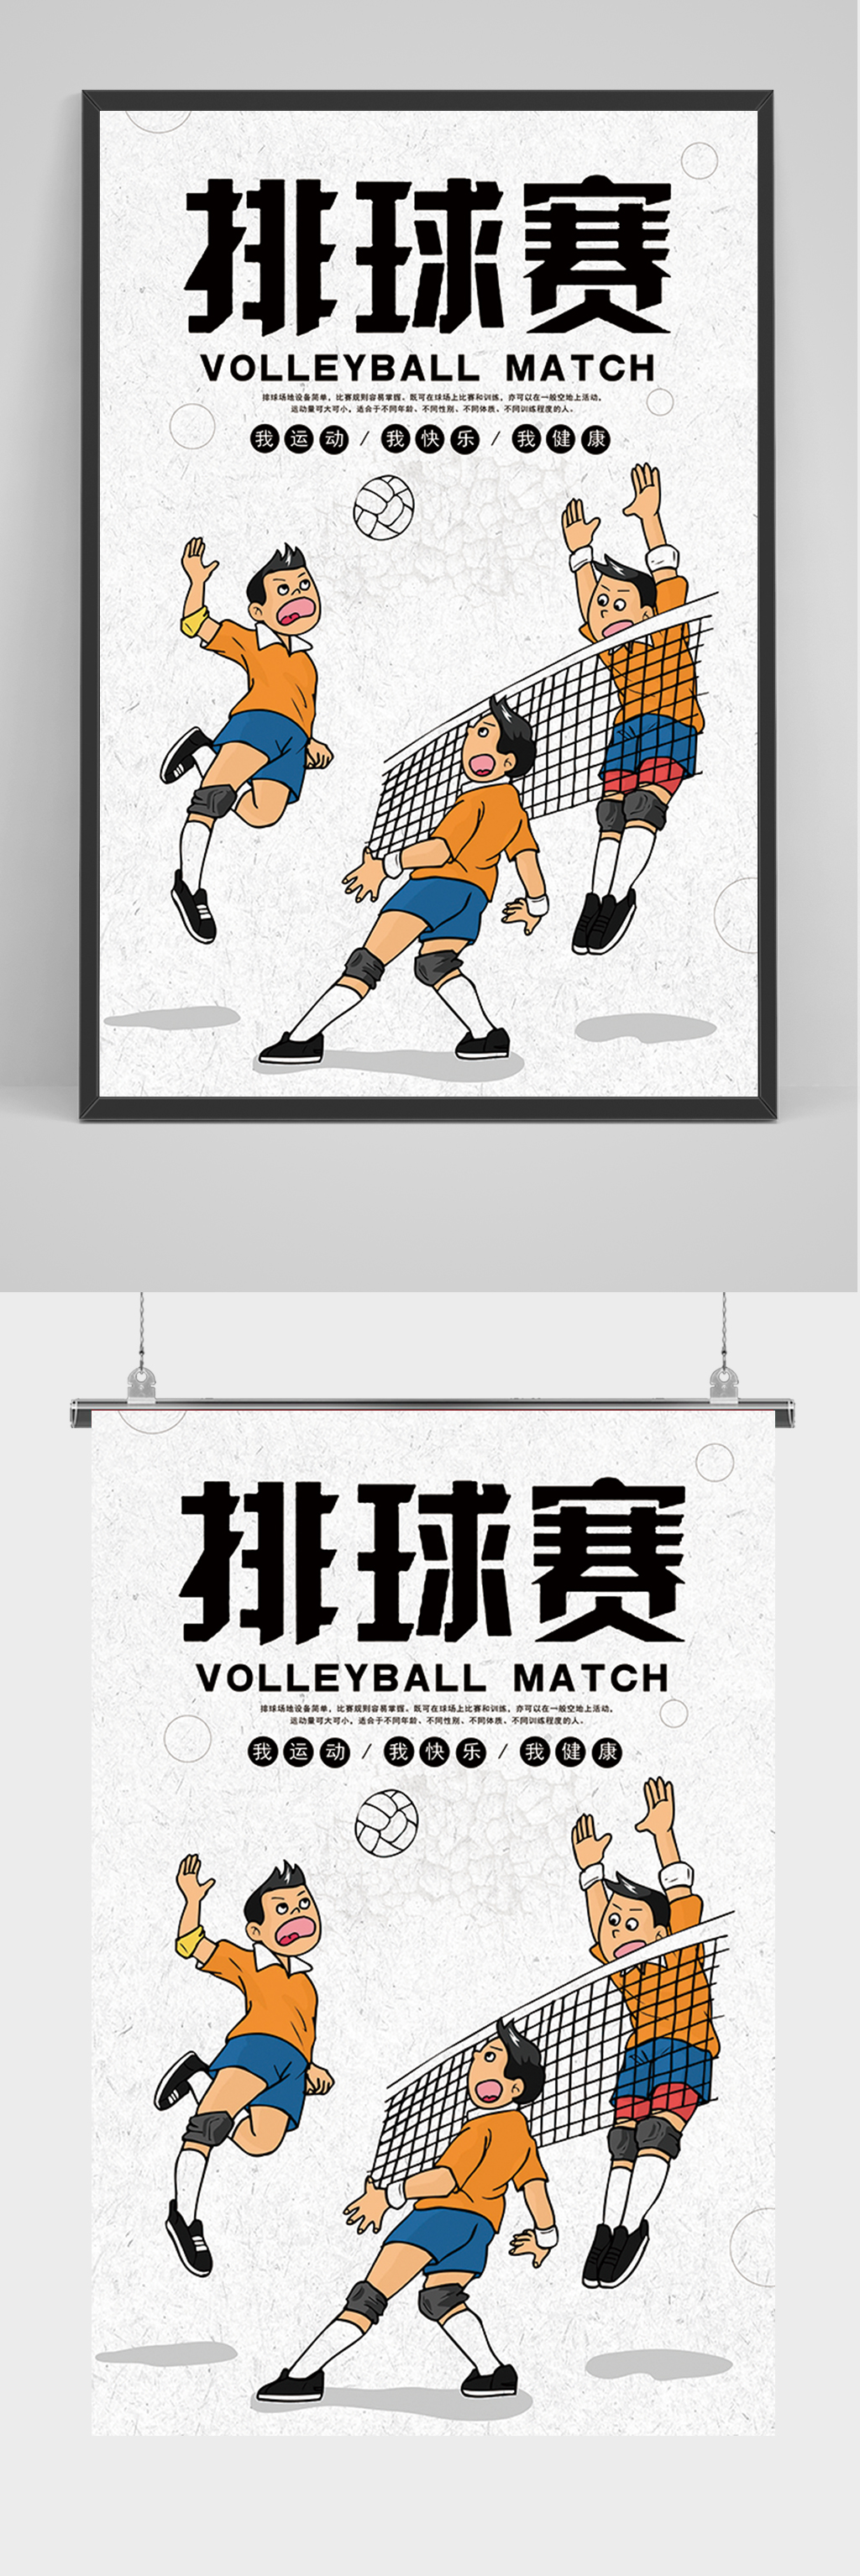 简约卡通排球赛海报立即下载简约手绘卡通排球社招生海报立即下载简约